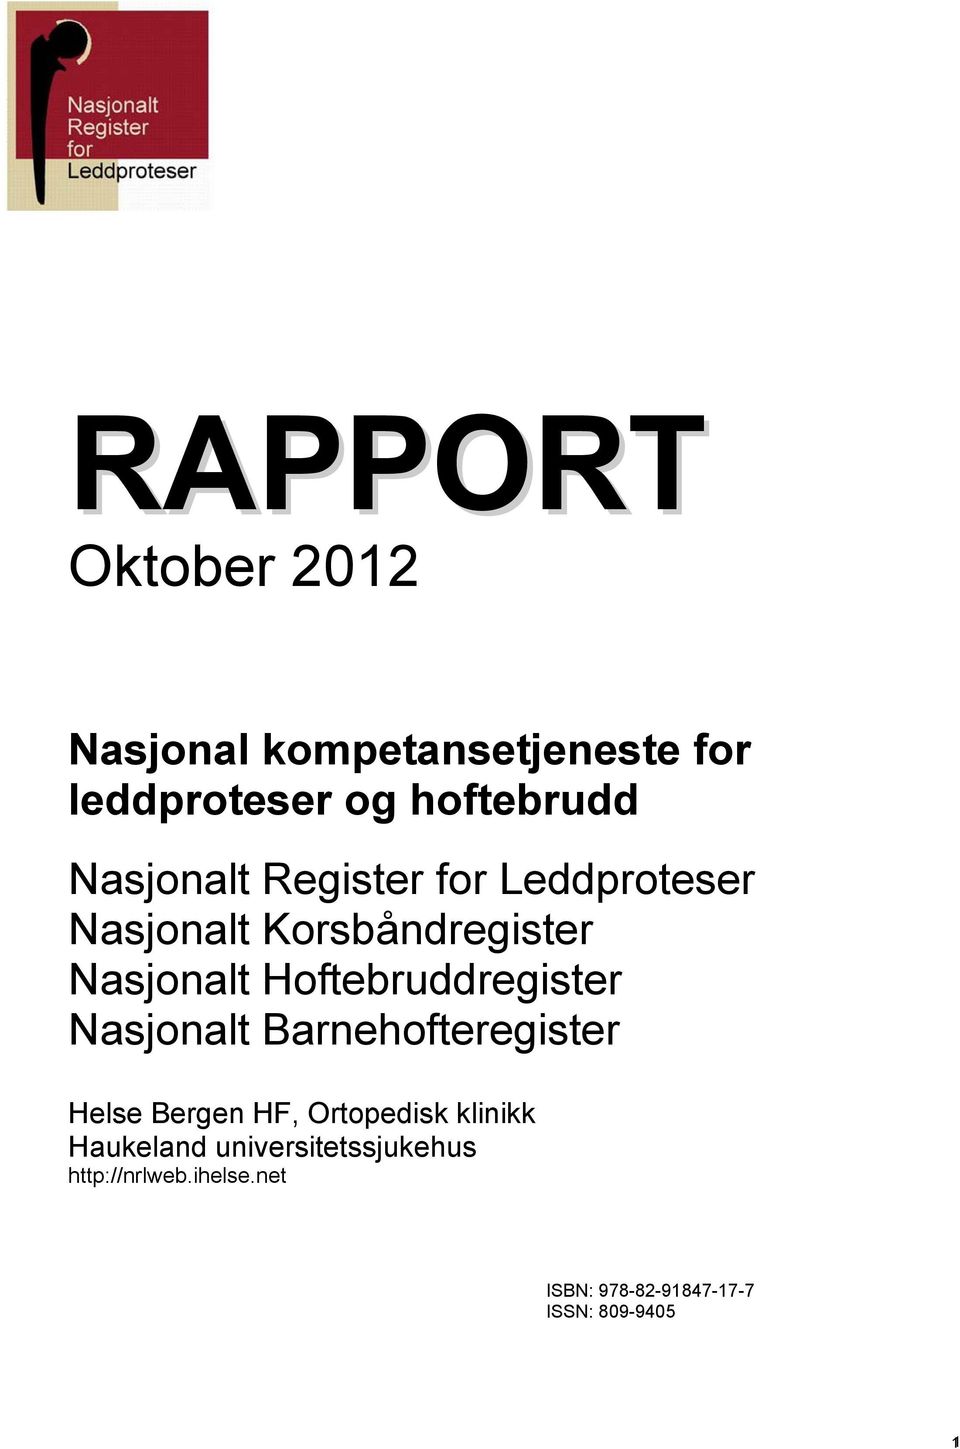 Hoftebruddregister Nasjonalt Barnehofteregister Helse Bergen HF, Ortopedisk